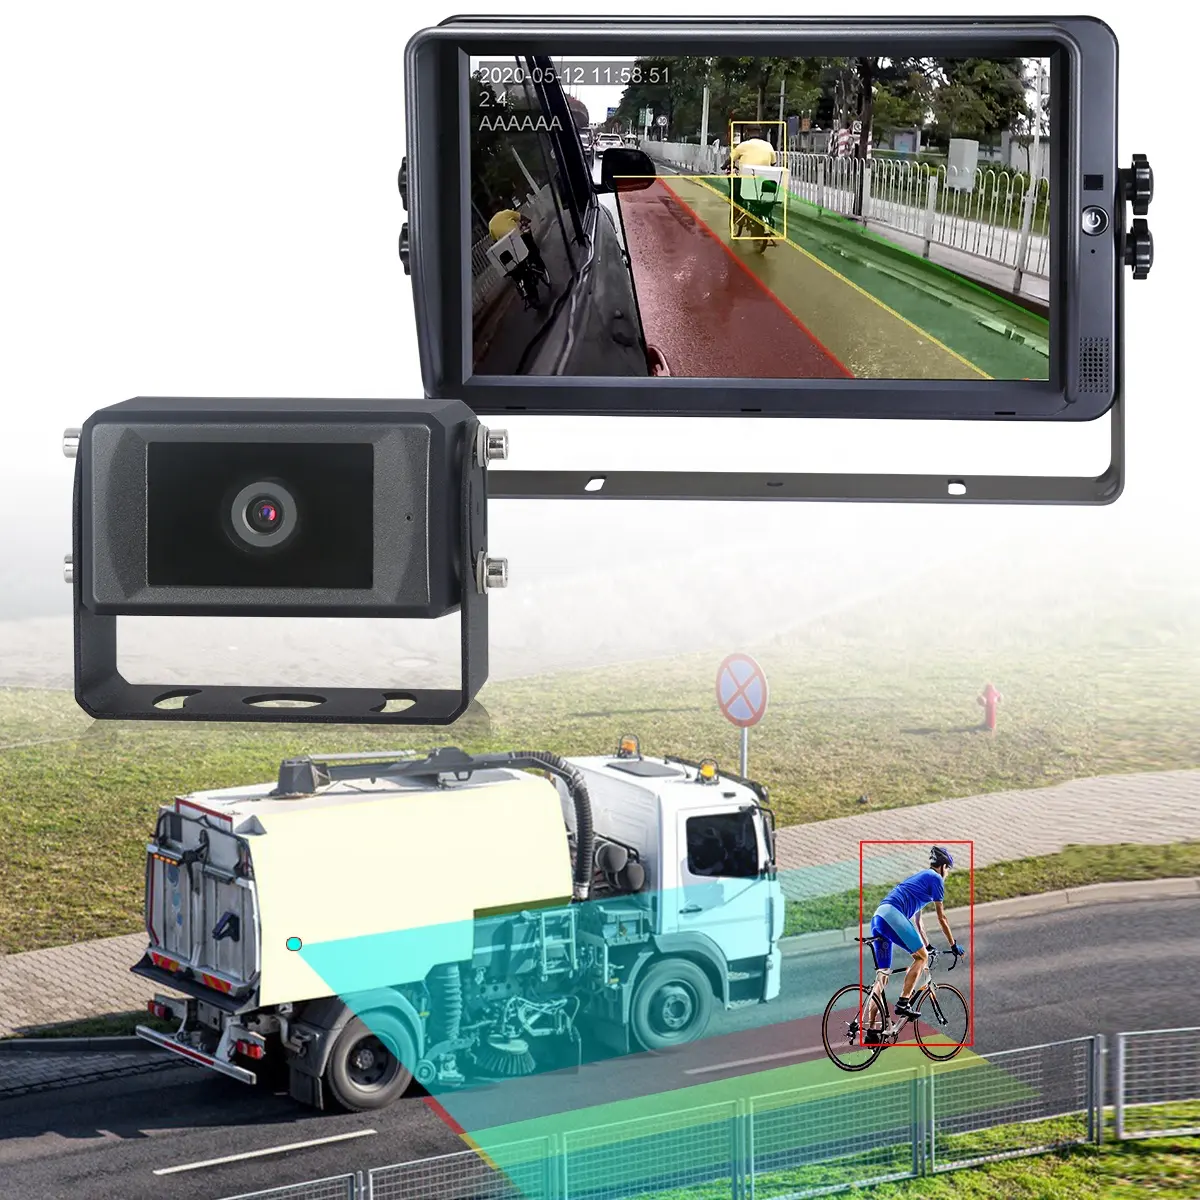 차량 보행자 및 자동차 감지 AI 카메라 용 STONKAM 자동차 및 차량 대형 자동차 반전 경보 카메라